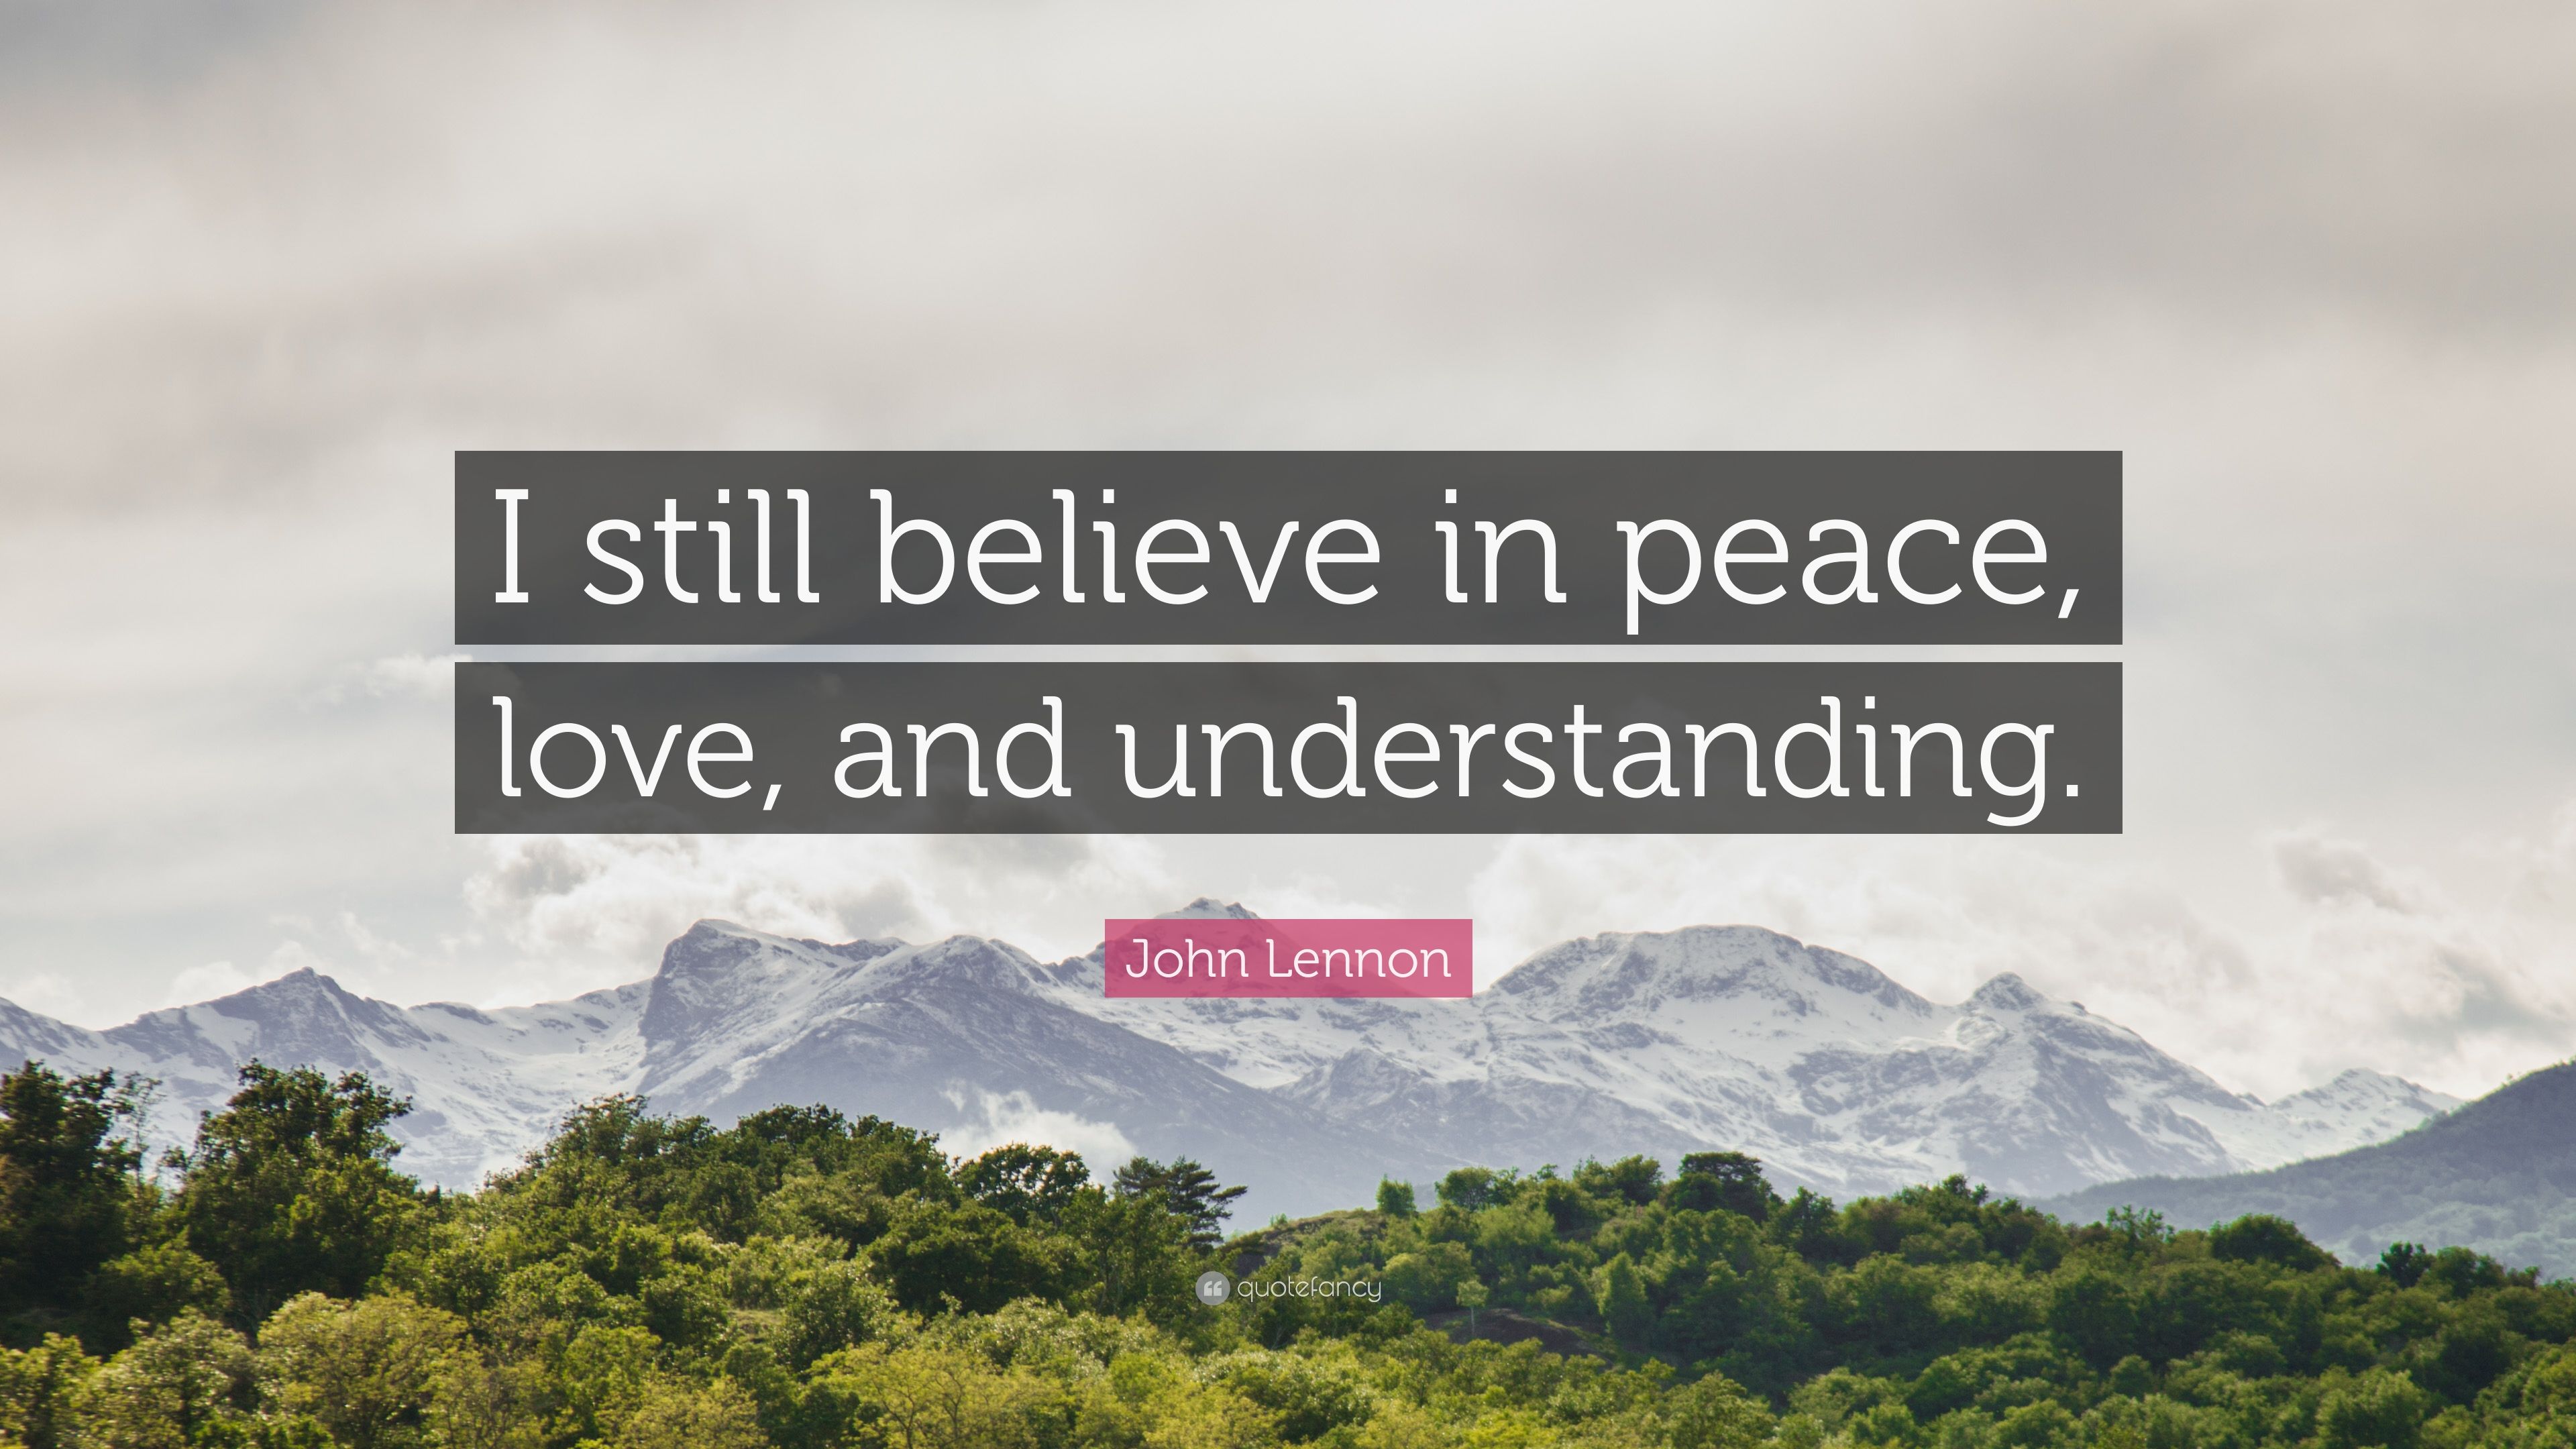 John Lennon Quote: “I still believe in peace, love